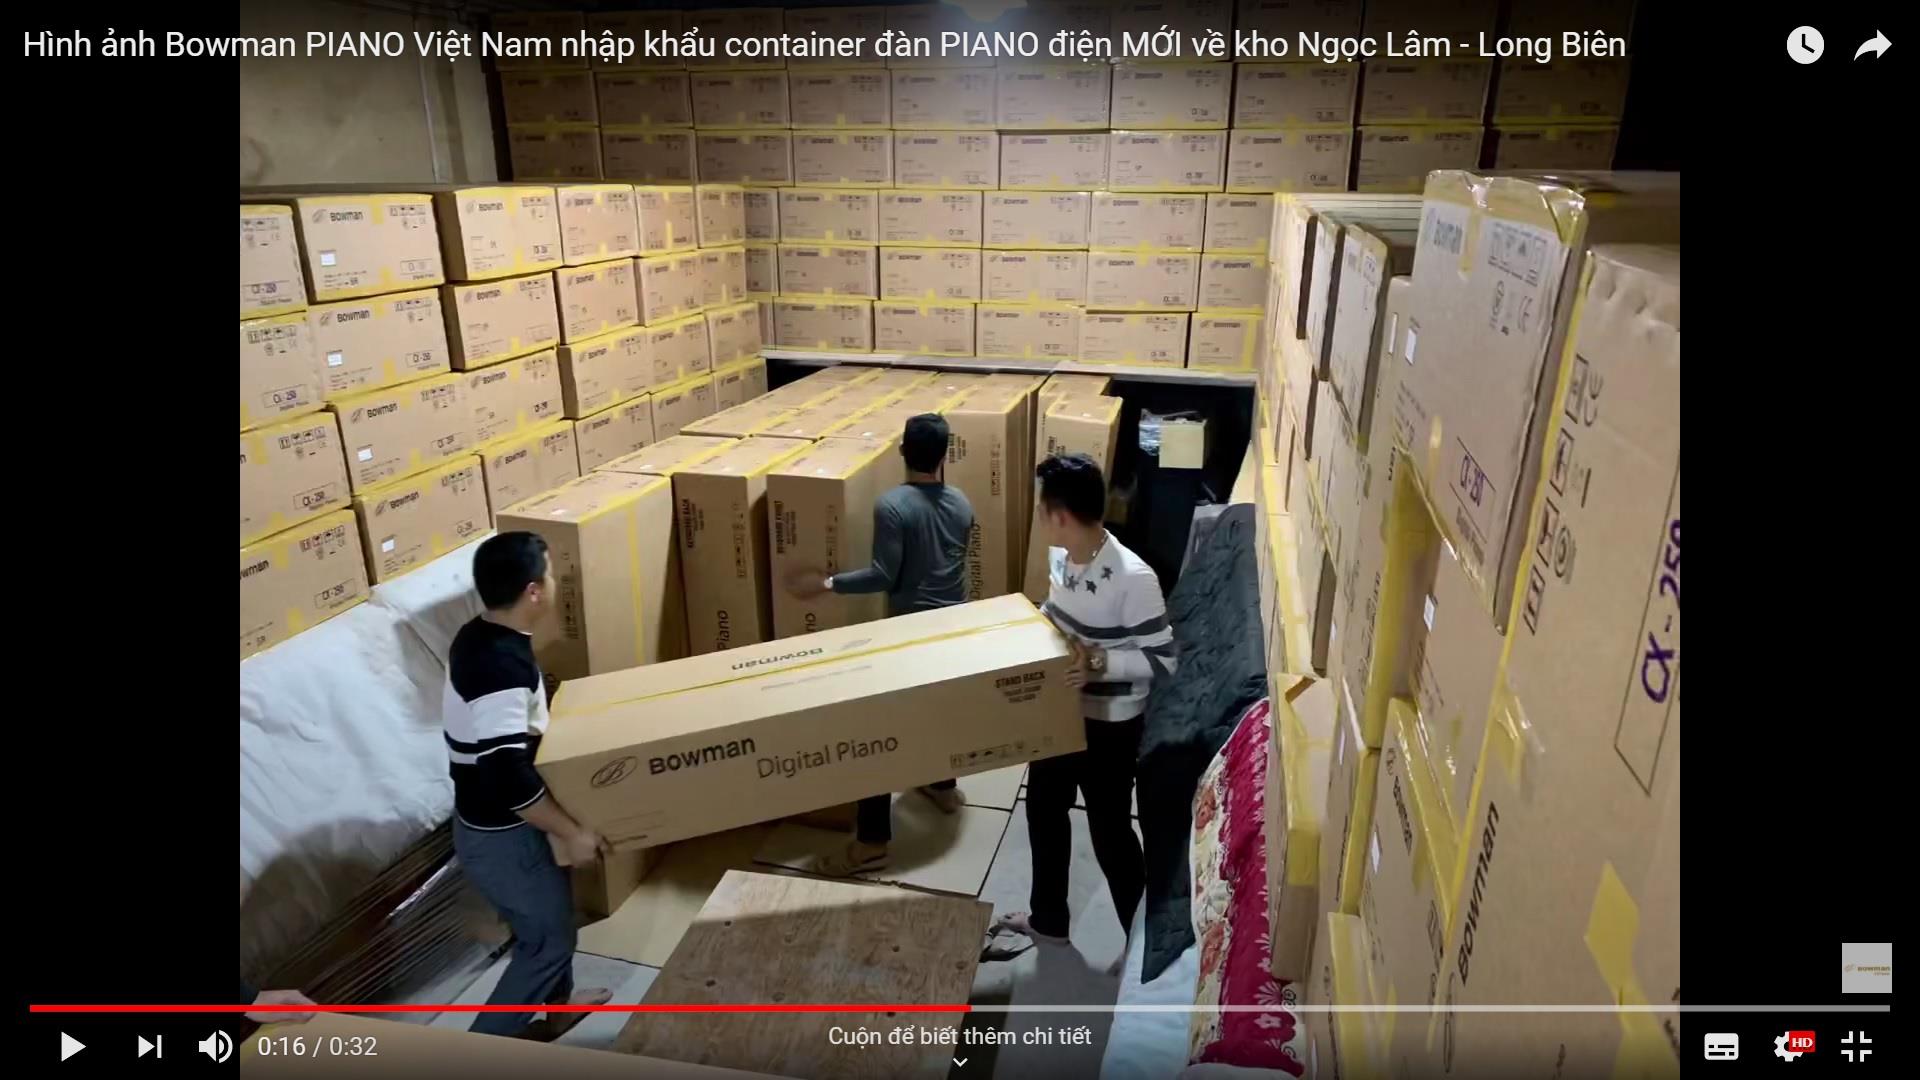 Hình ảnh Bowman PIANO Việt Nam nhập khẩu container đàn PIANO điện MỚI về kho Ngọc Lâm - Long Biên